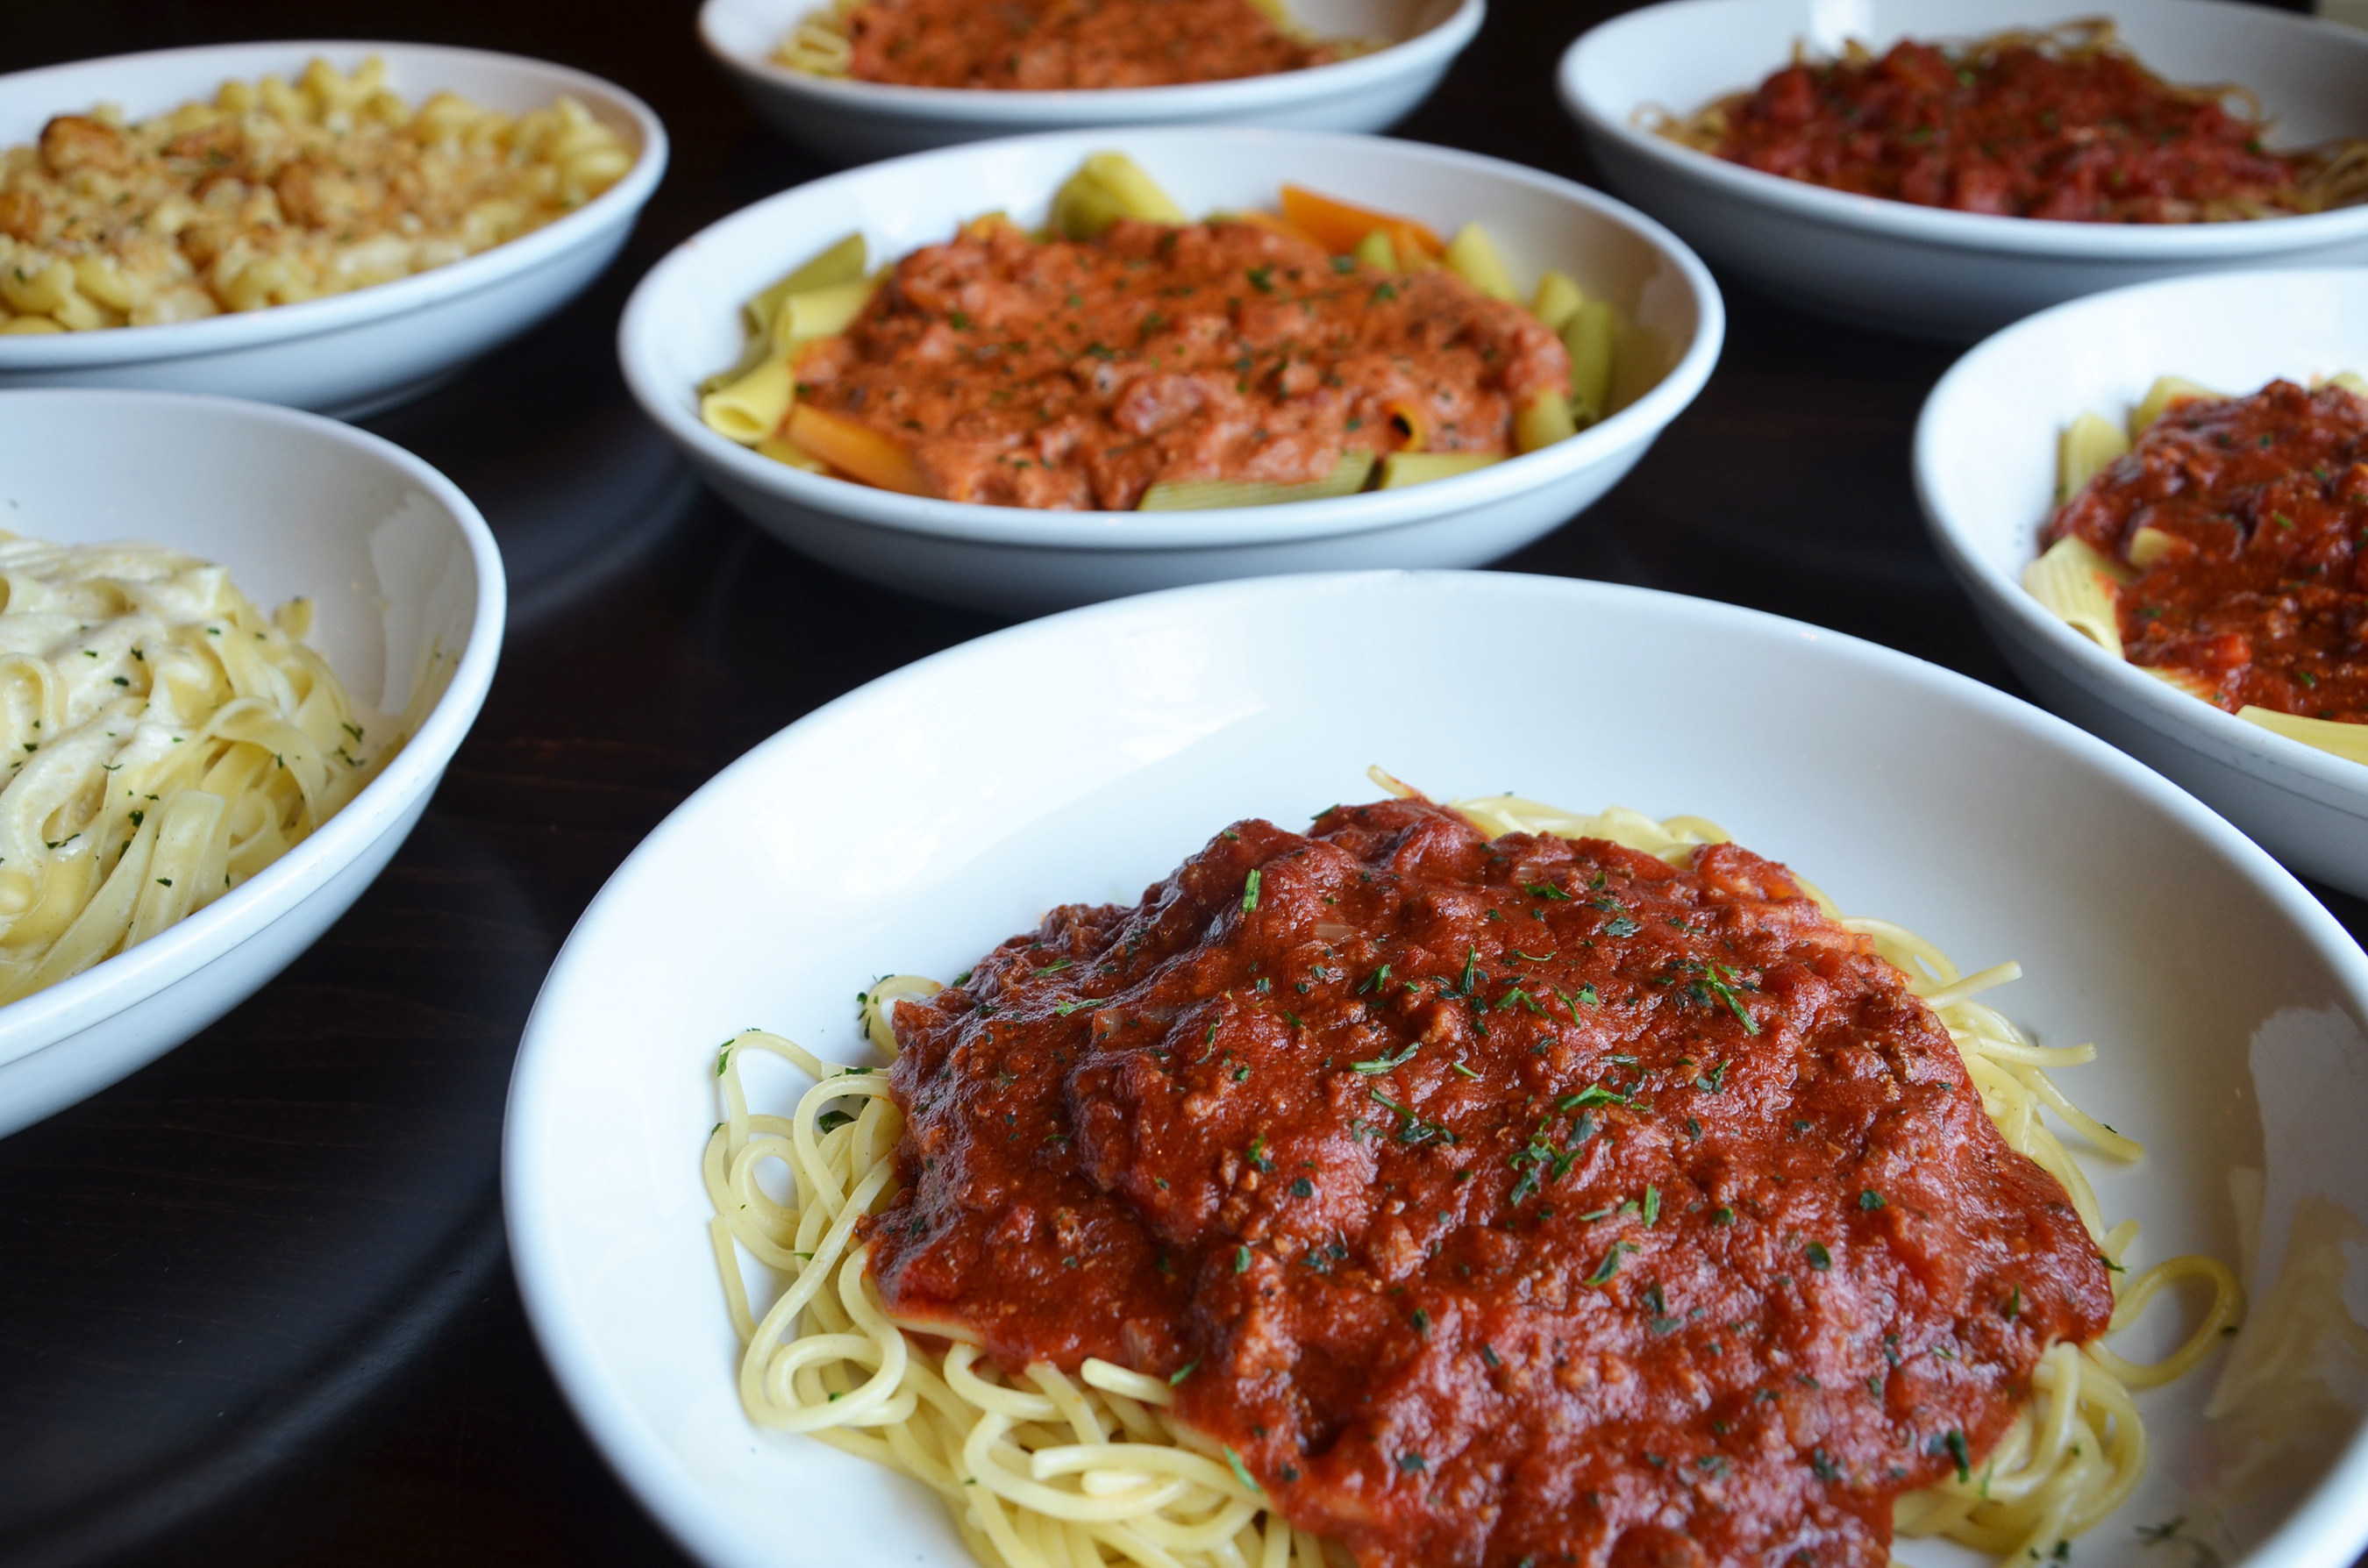 Olive Garden's bringing back the Never-Ending Pasta Bowl